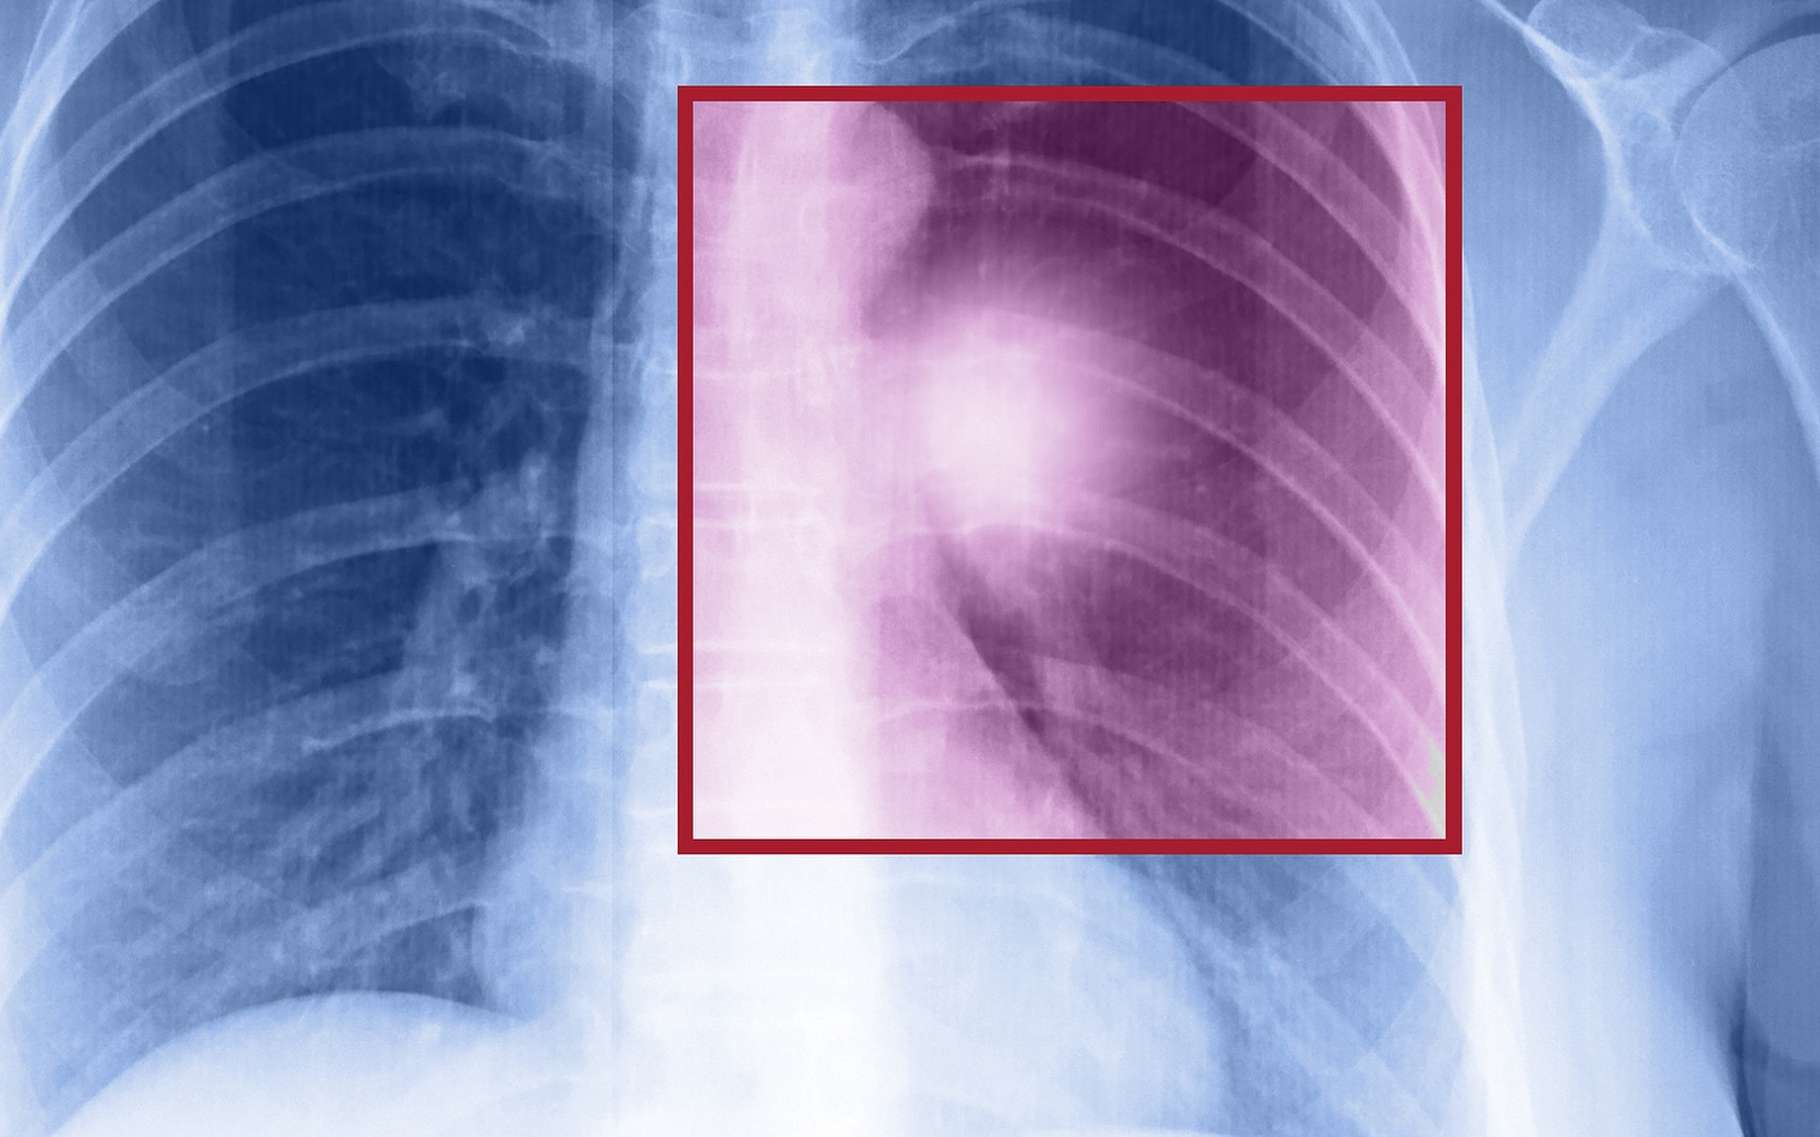 Le cancer du poumon peut être détecté par une radiographie, un scanner thoracique et une biopsie. © muratart, Shutterstock